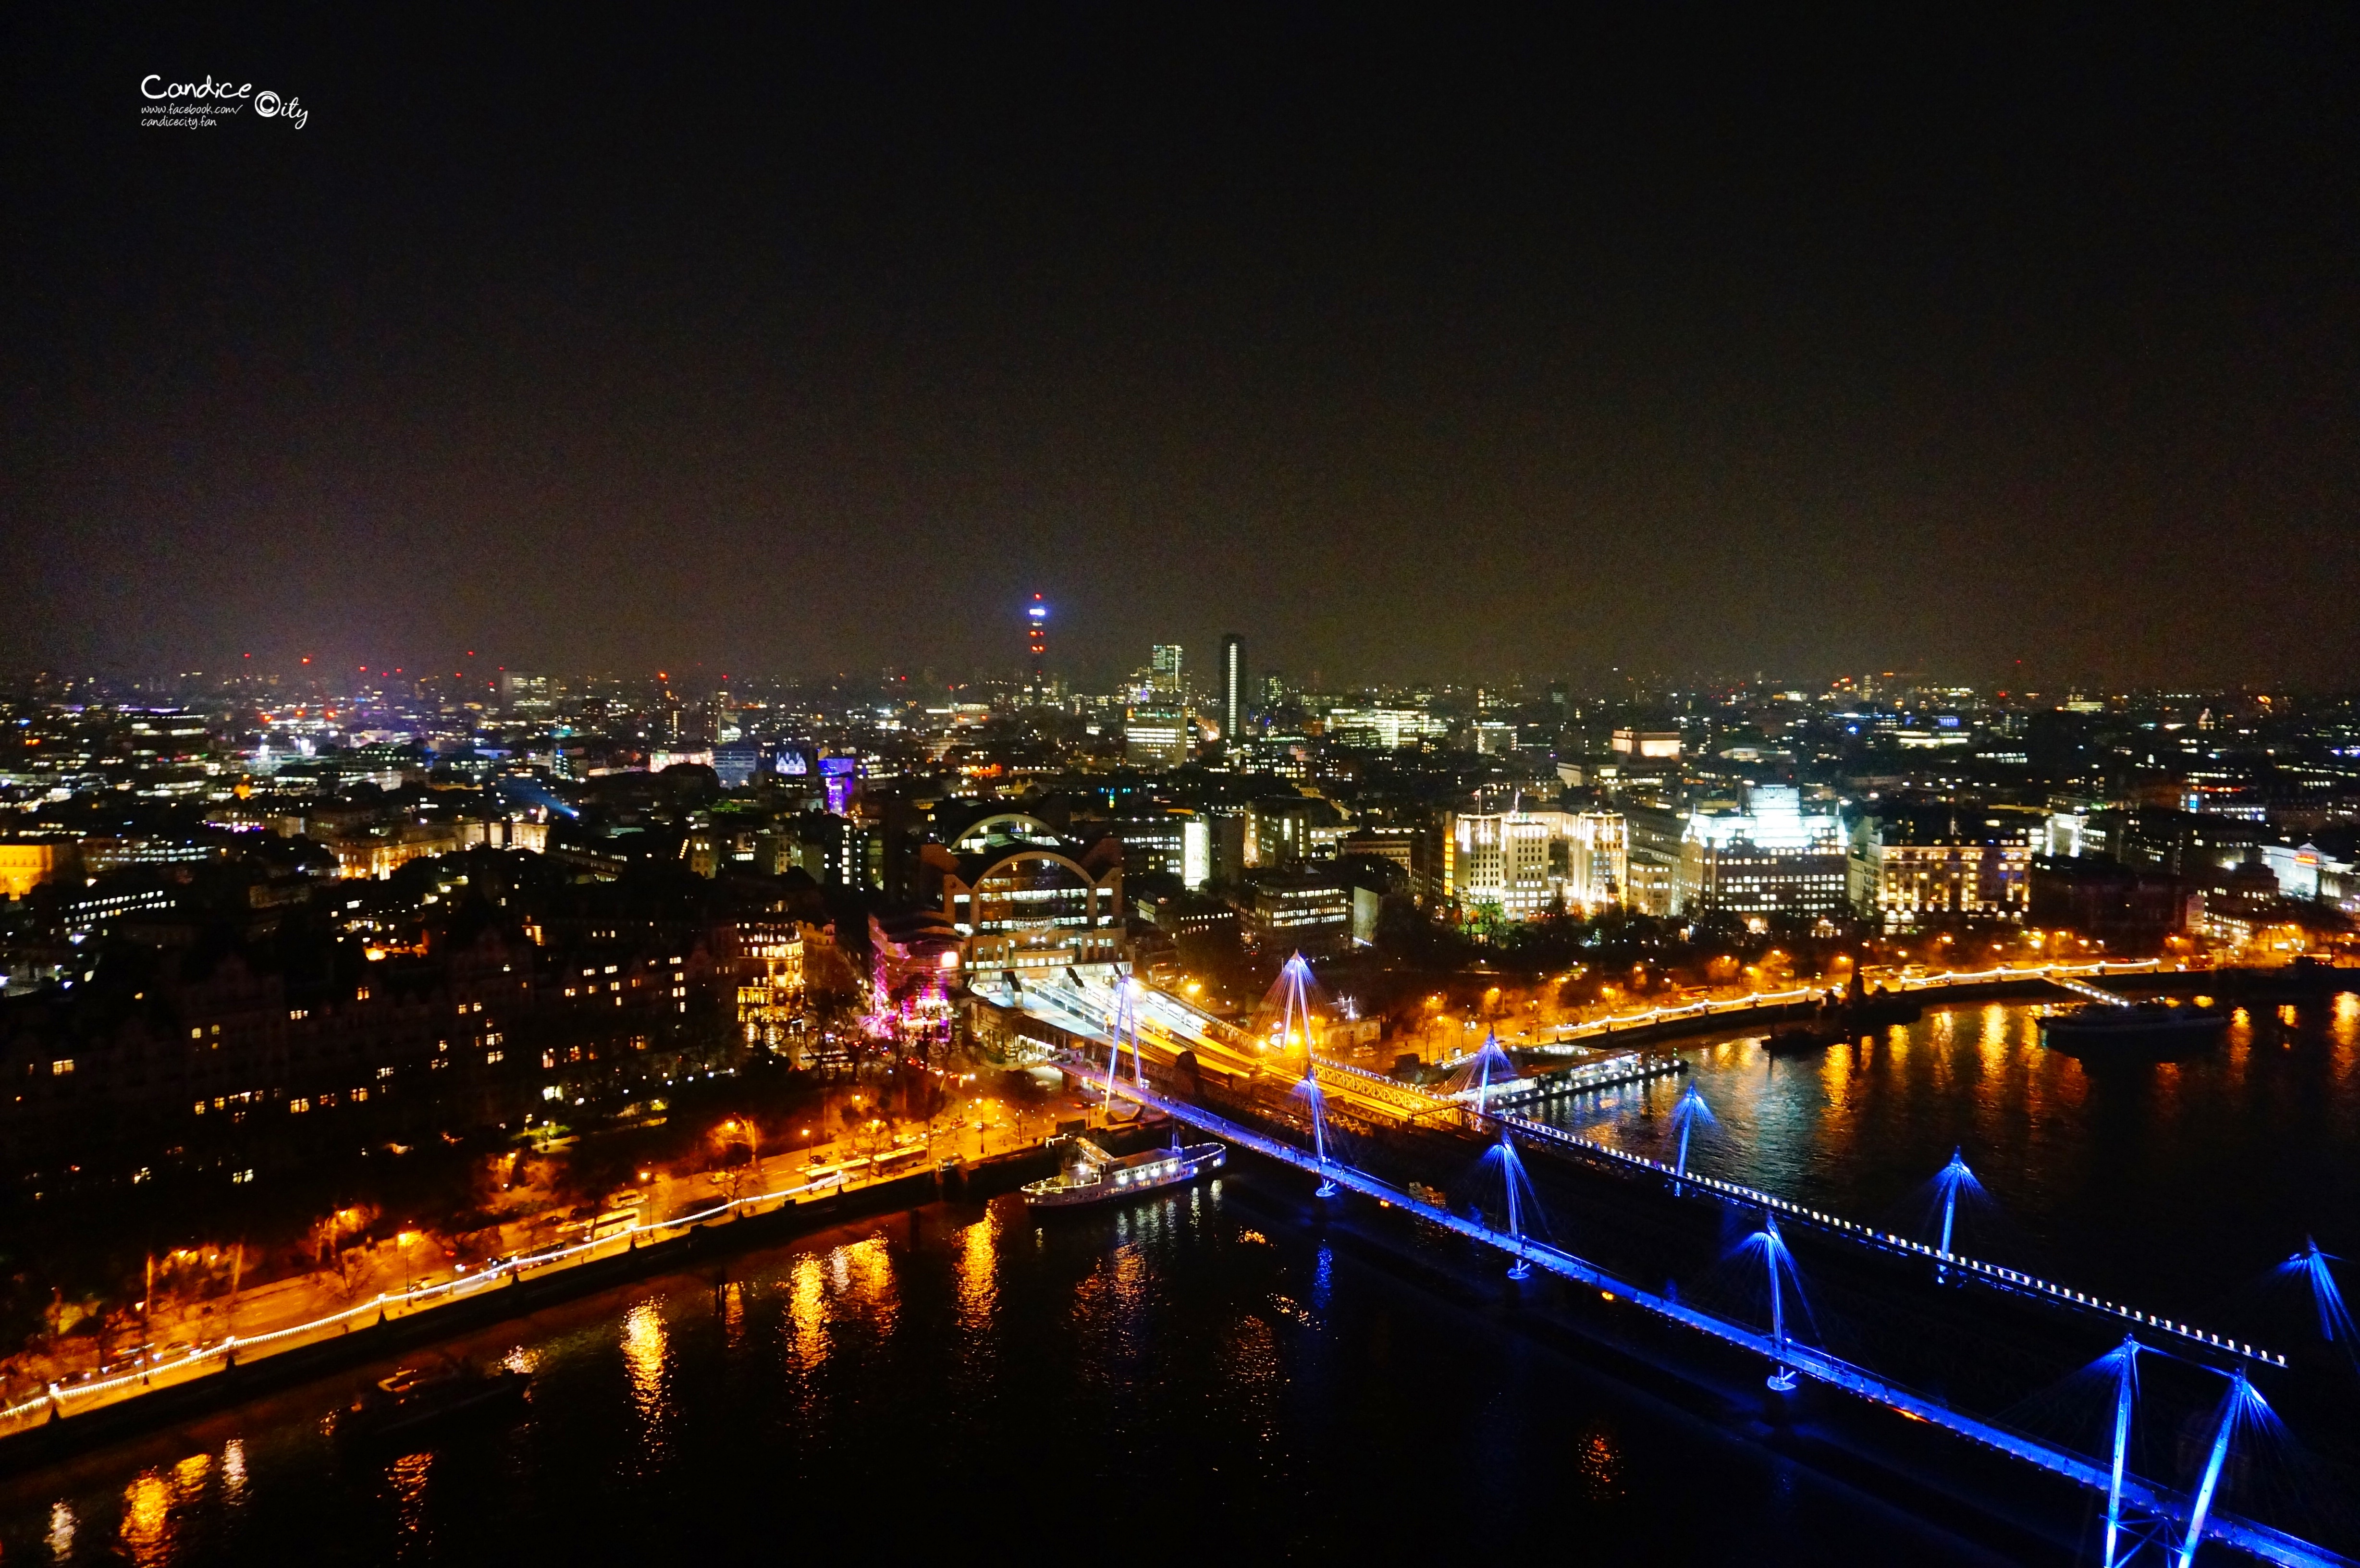 【倫敦景點】倫敦眼看夕陽,登倫敦眼看夜景!超美夜景必訪! @陳小沁の吃喝玩樂